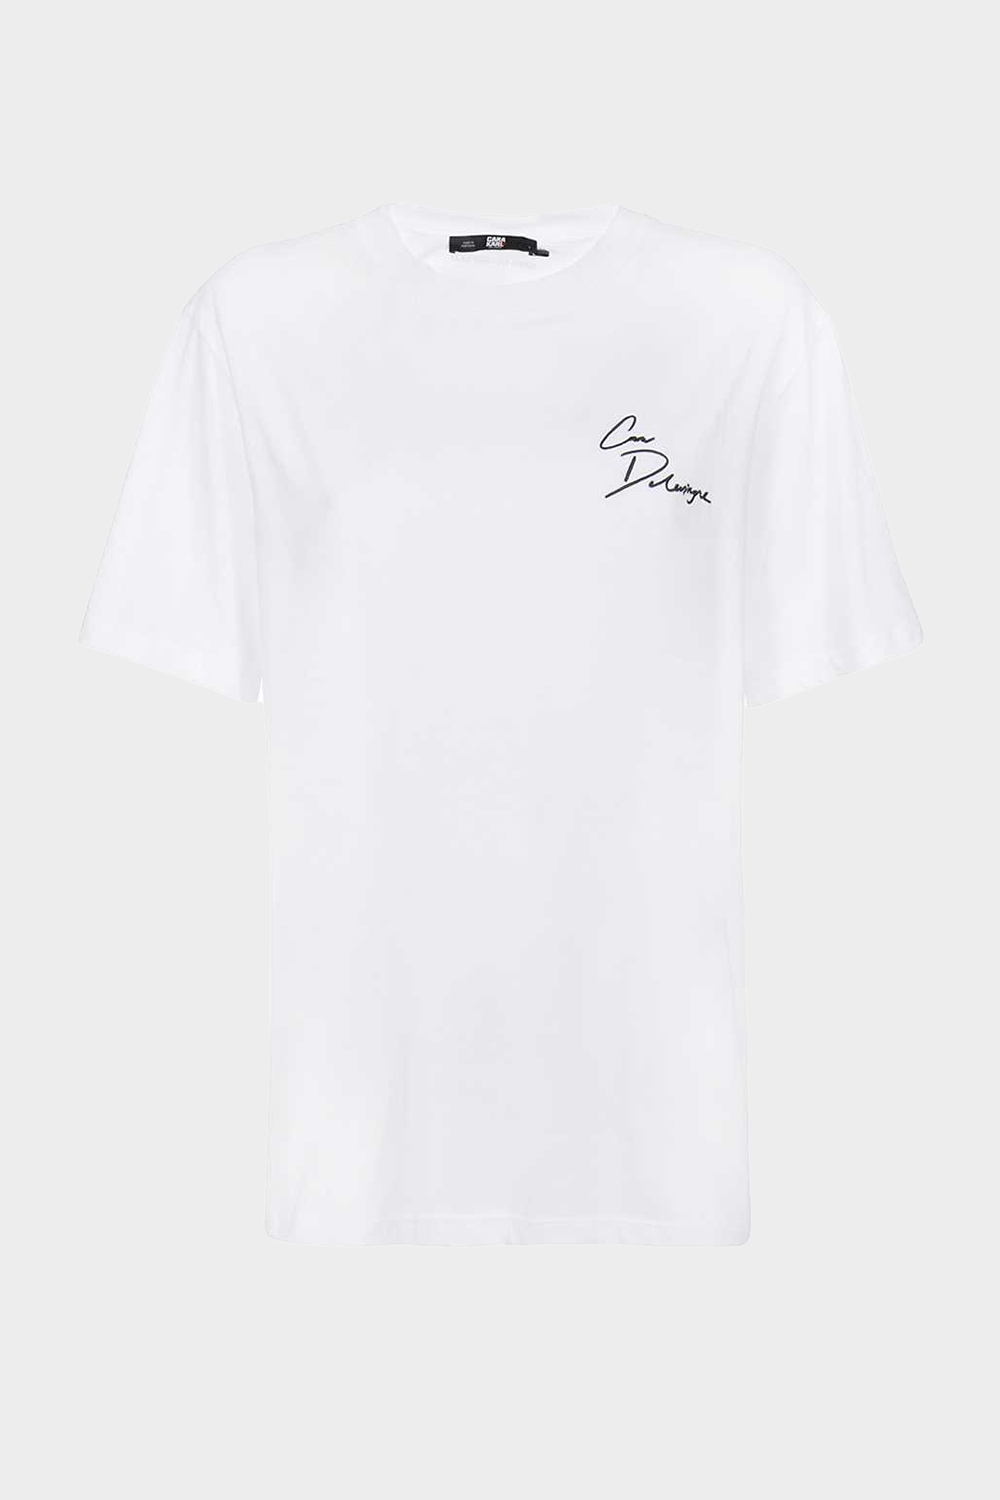 חולצת טי שירט לנשים בצבע לבן KARL LAGERFELD Vendome online | ונדום .